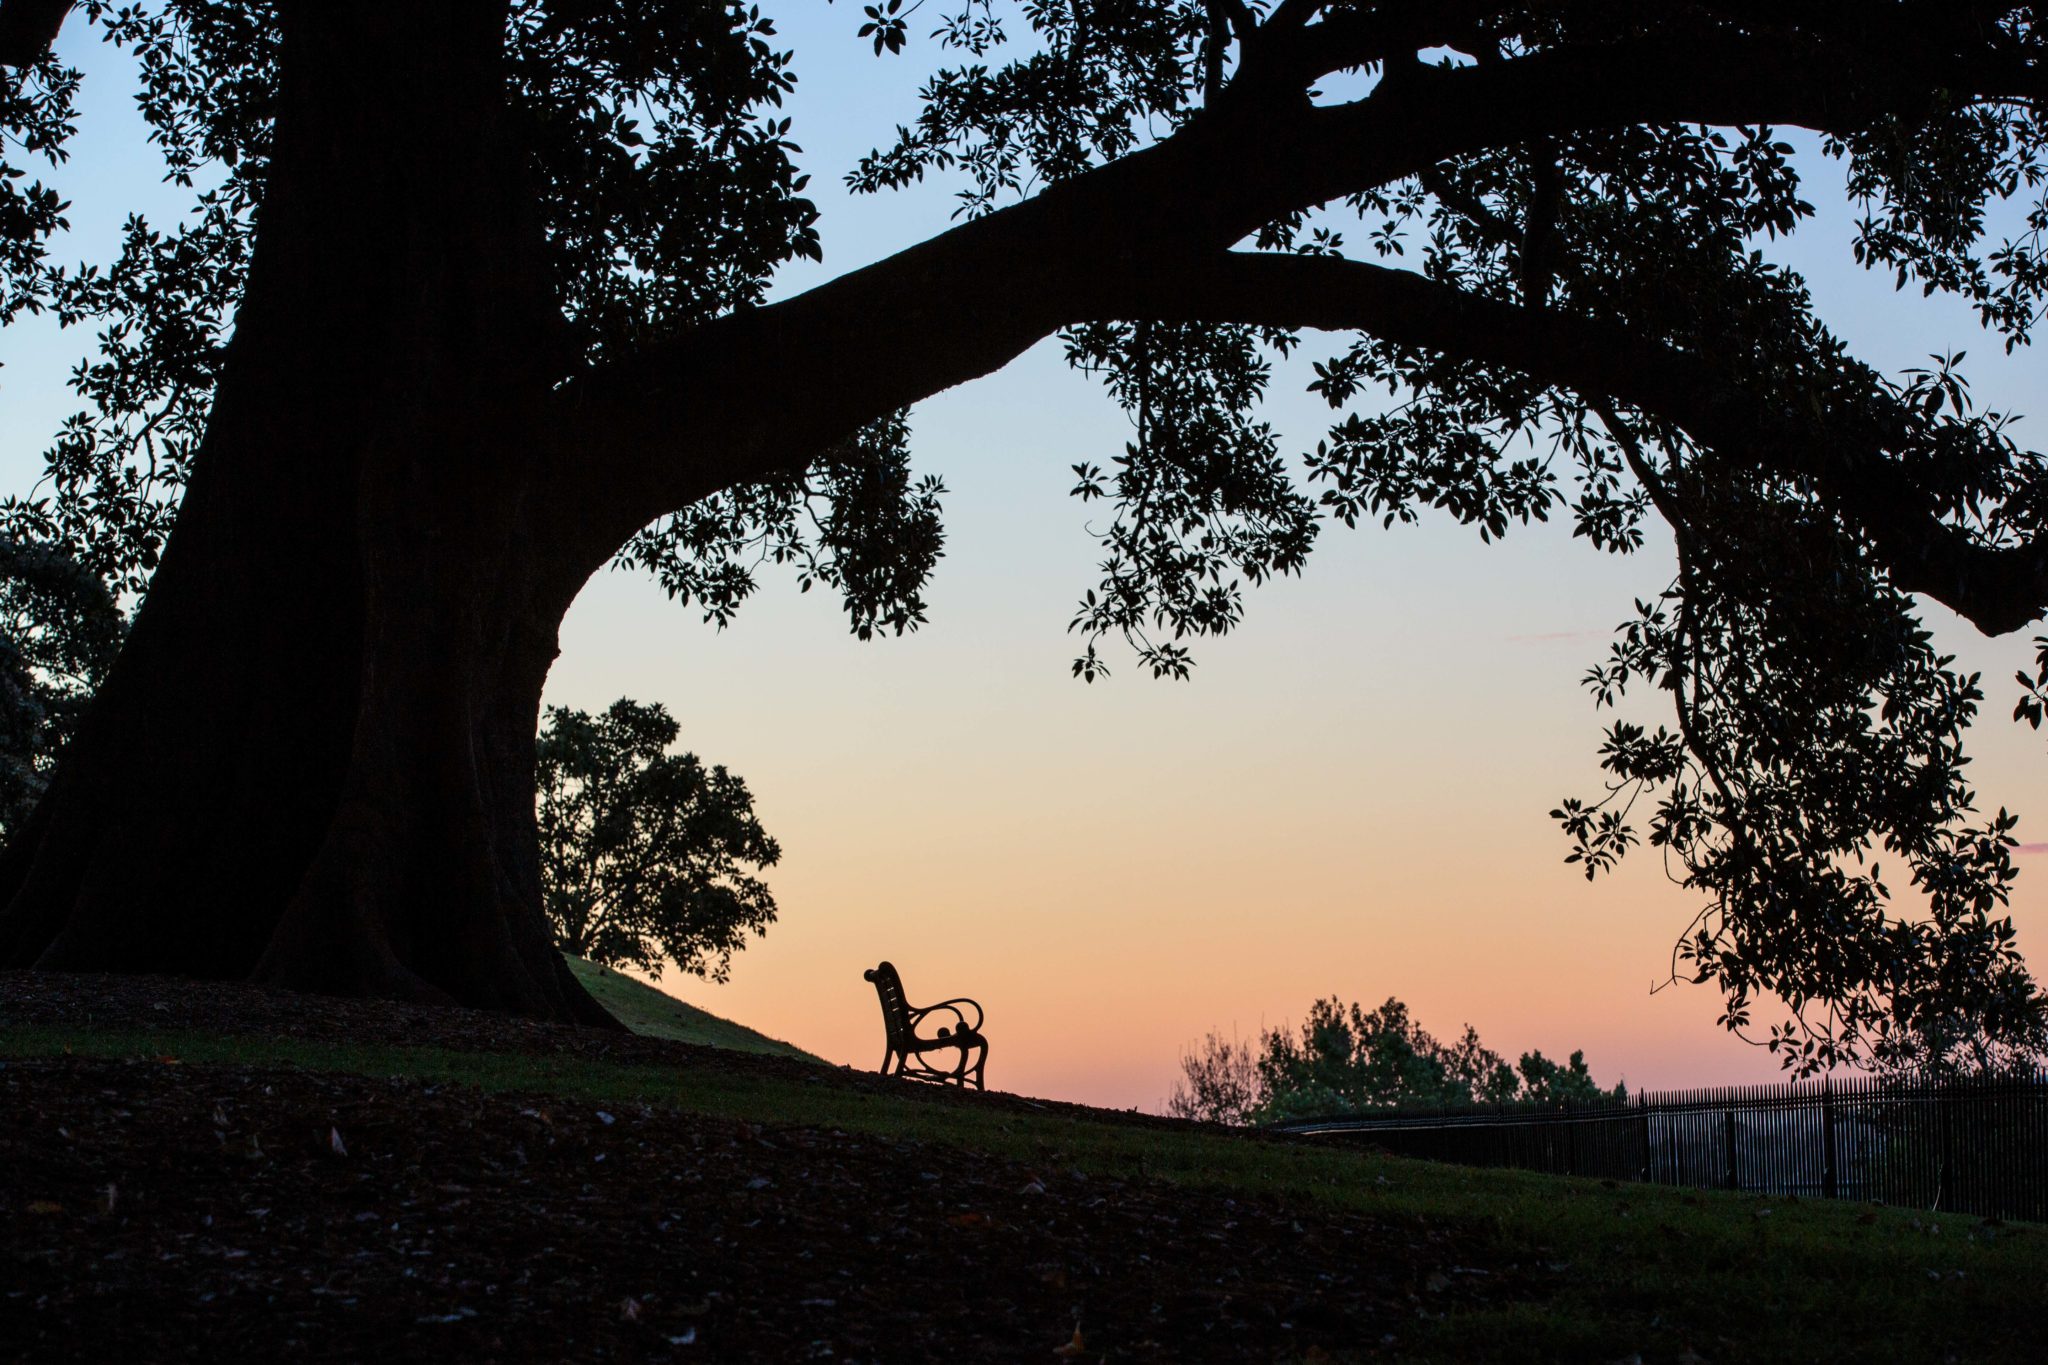 Solitude elegant park bench on Sydney Observatory Hill